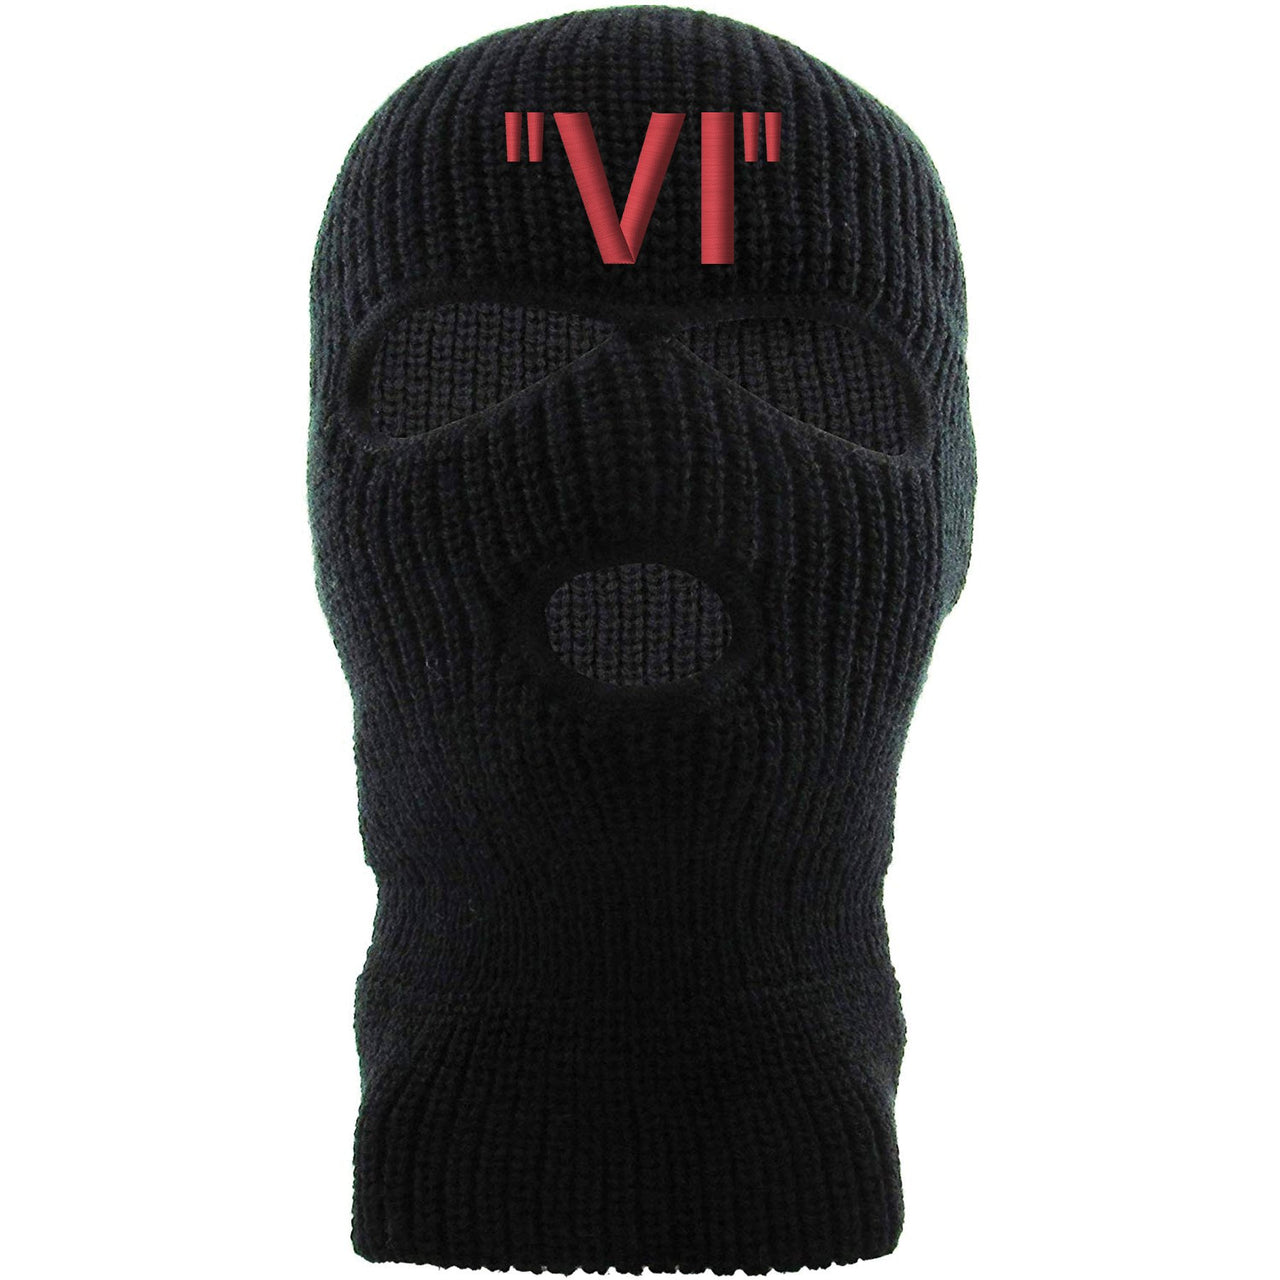 Infrared 6s Ski Mask | VI, Black